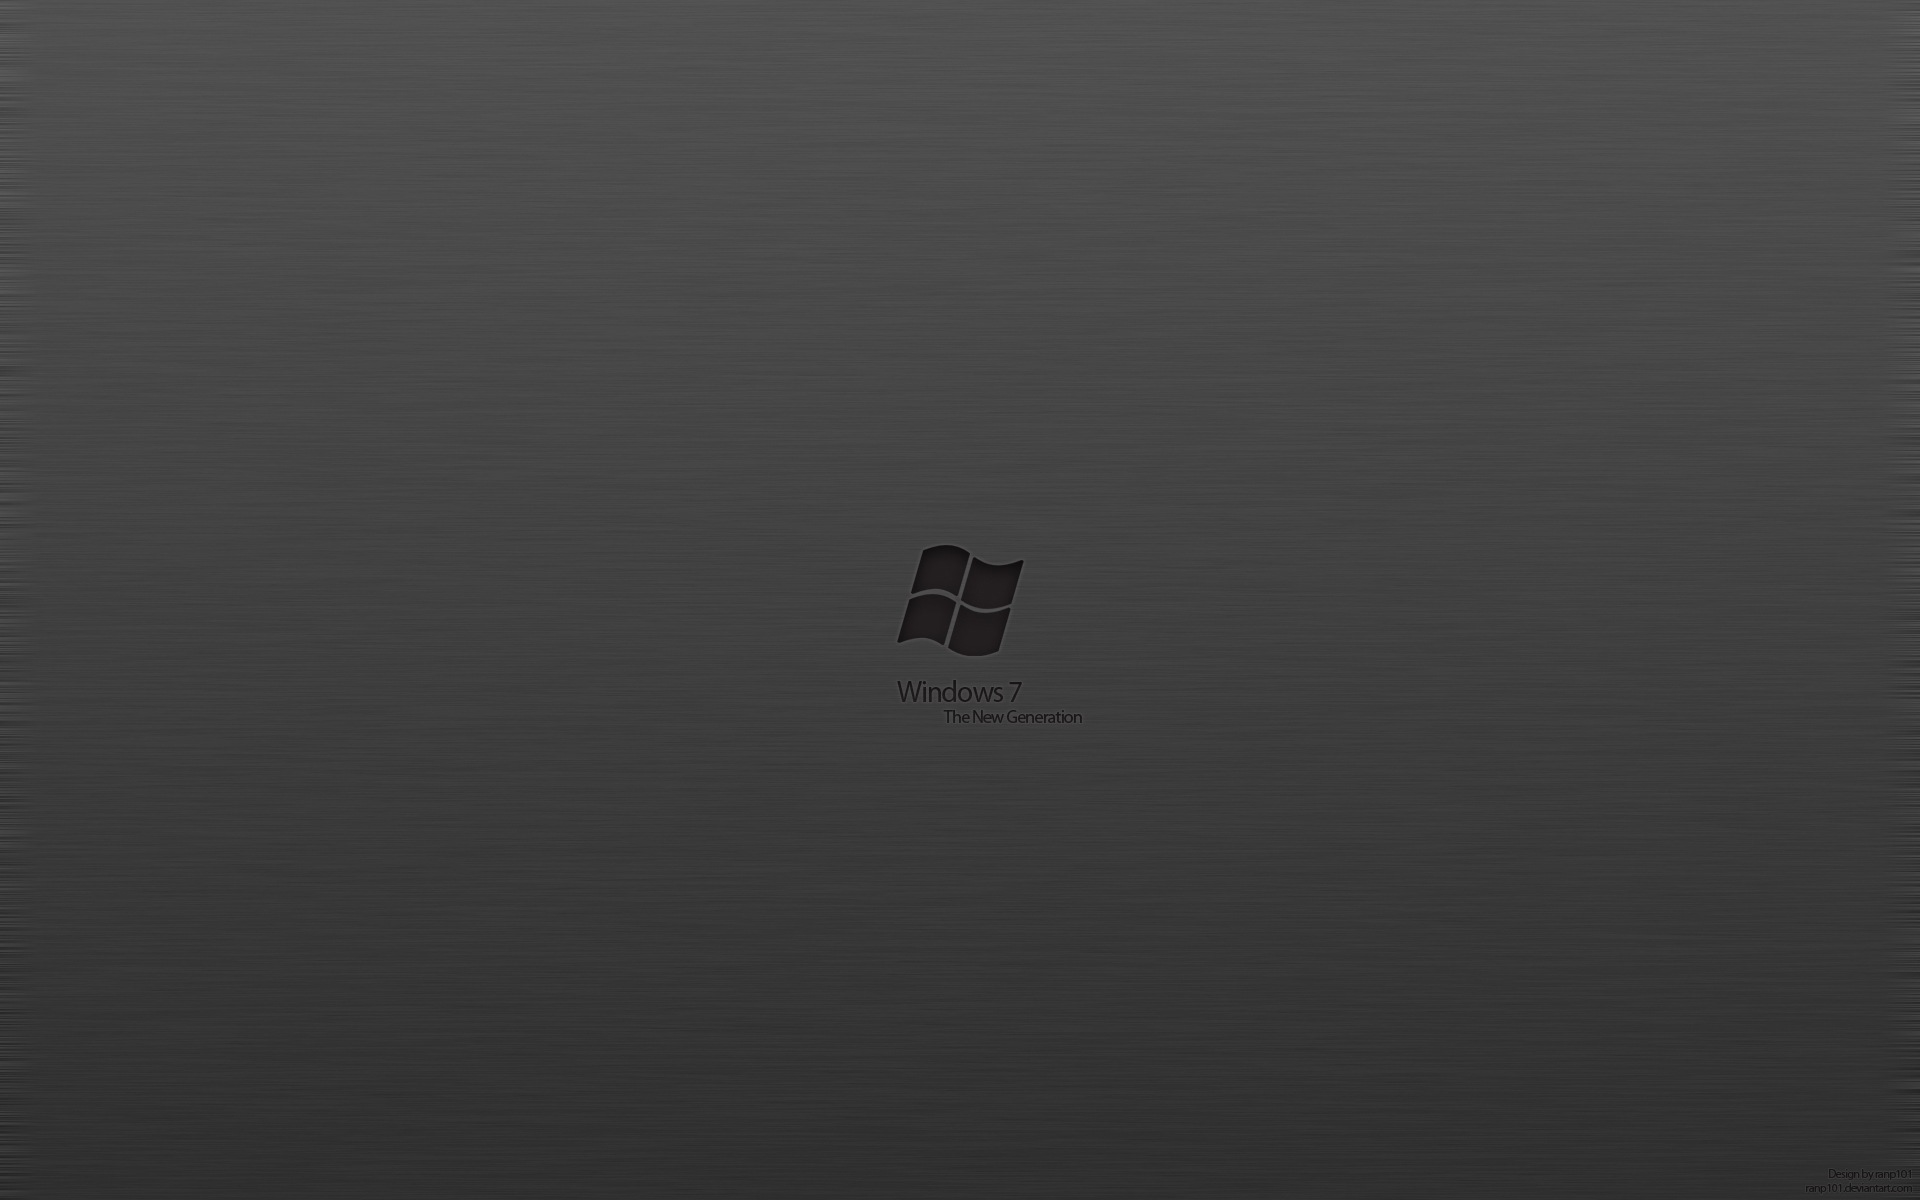 Yksek znrlkl duvar katlar [Windows 7] Egonomik